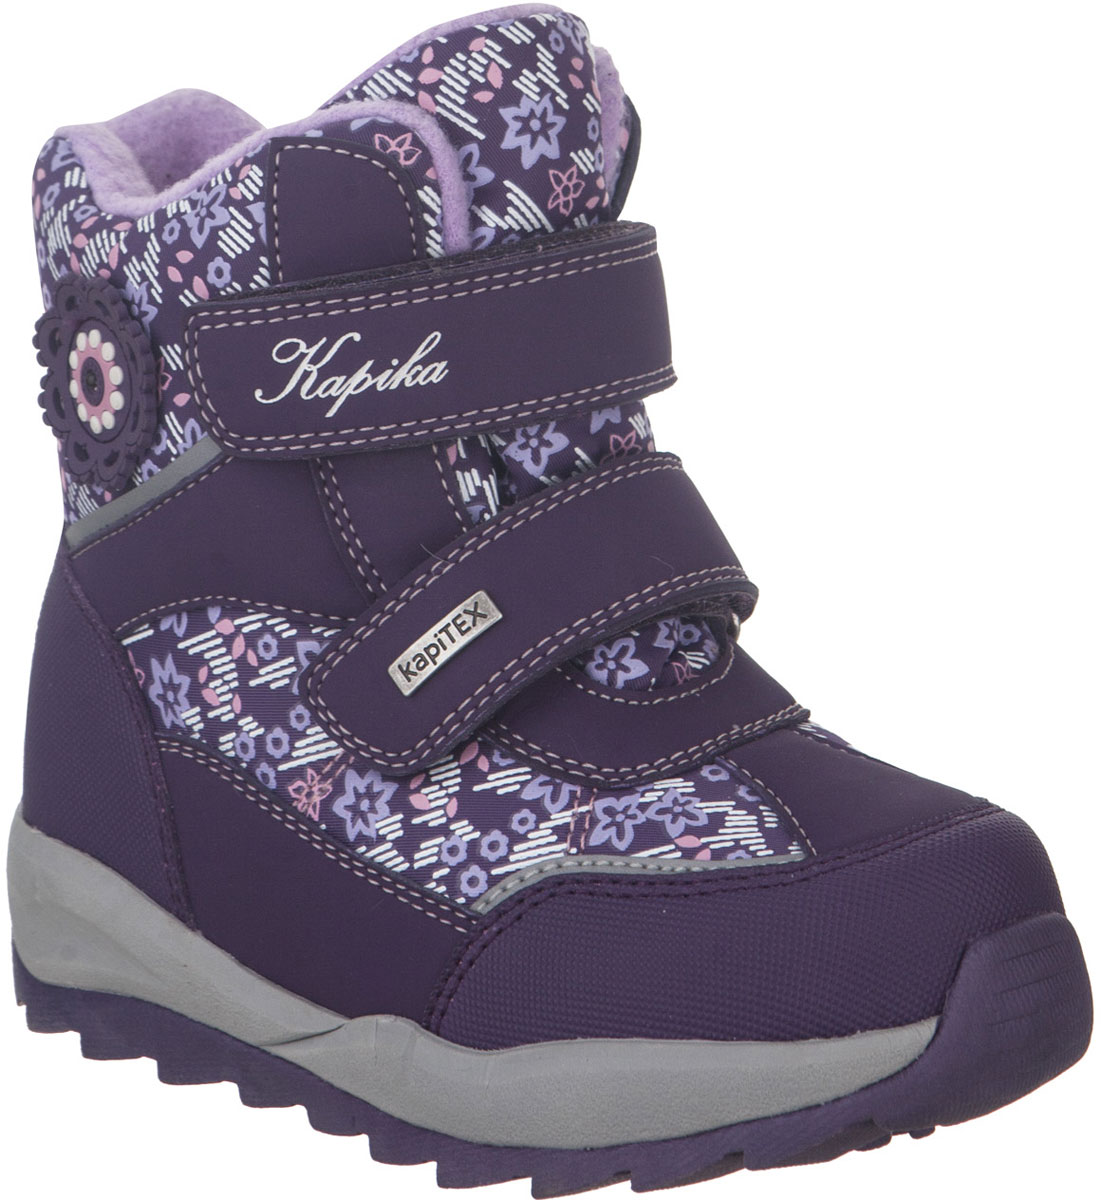 Ботинки для девочки Kapika, цвет: фиолетовый. 42245-2. Размер 28